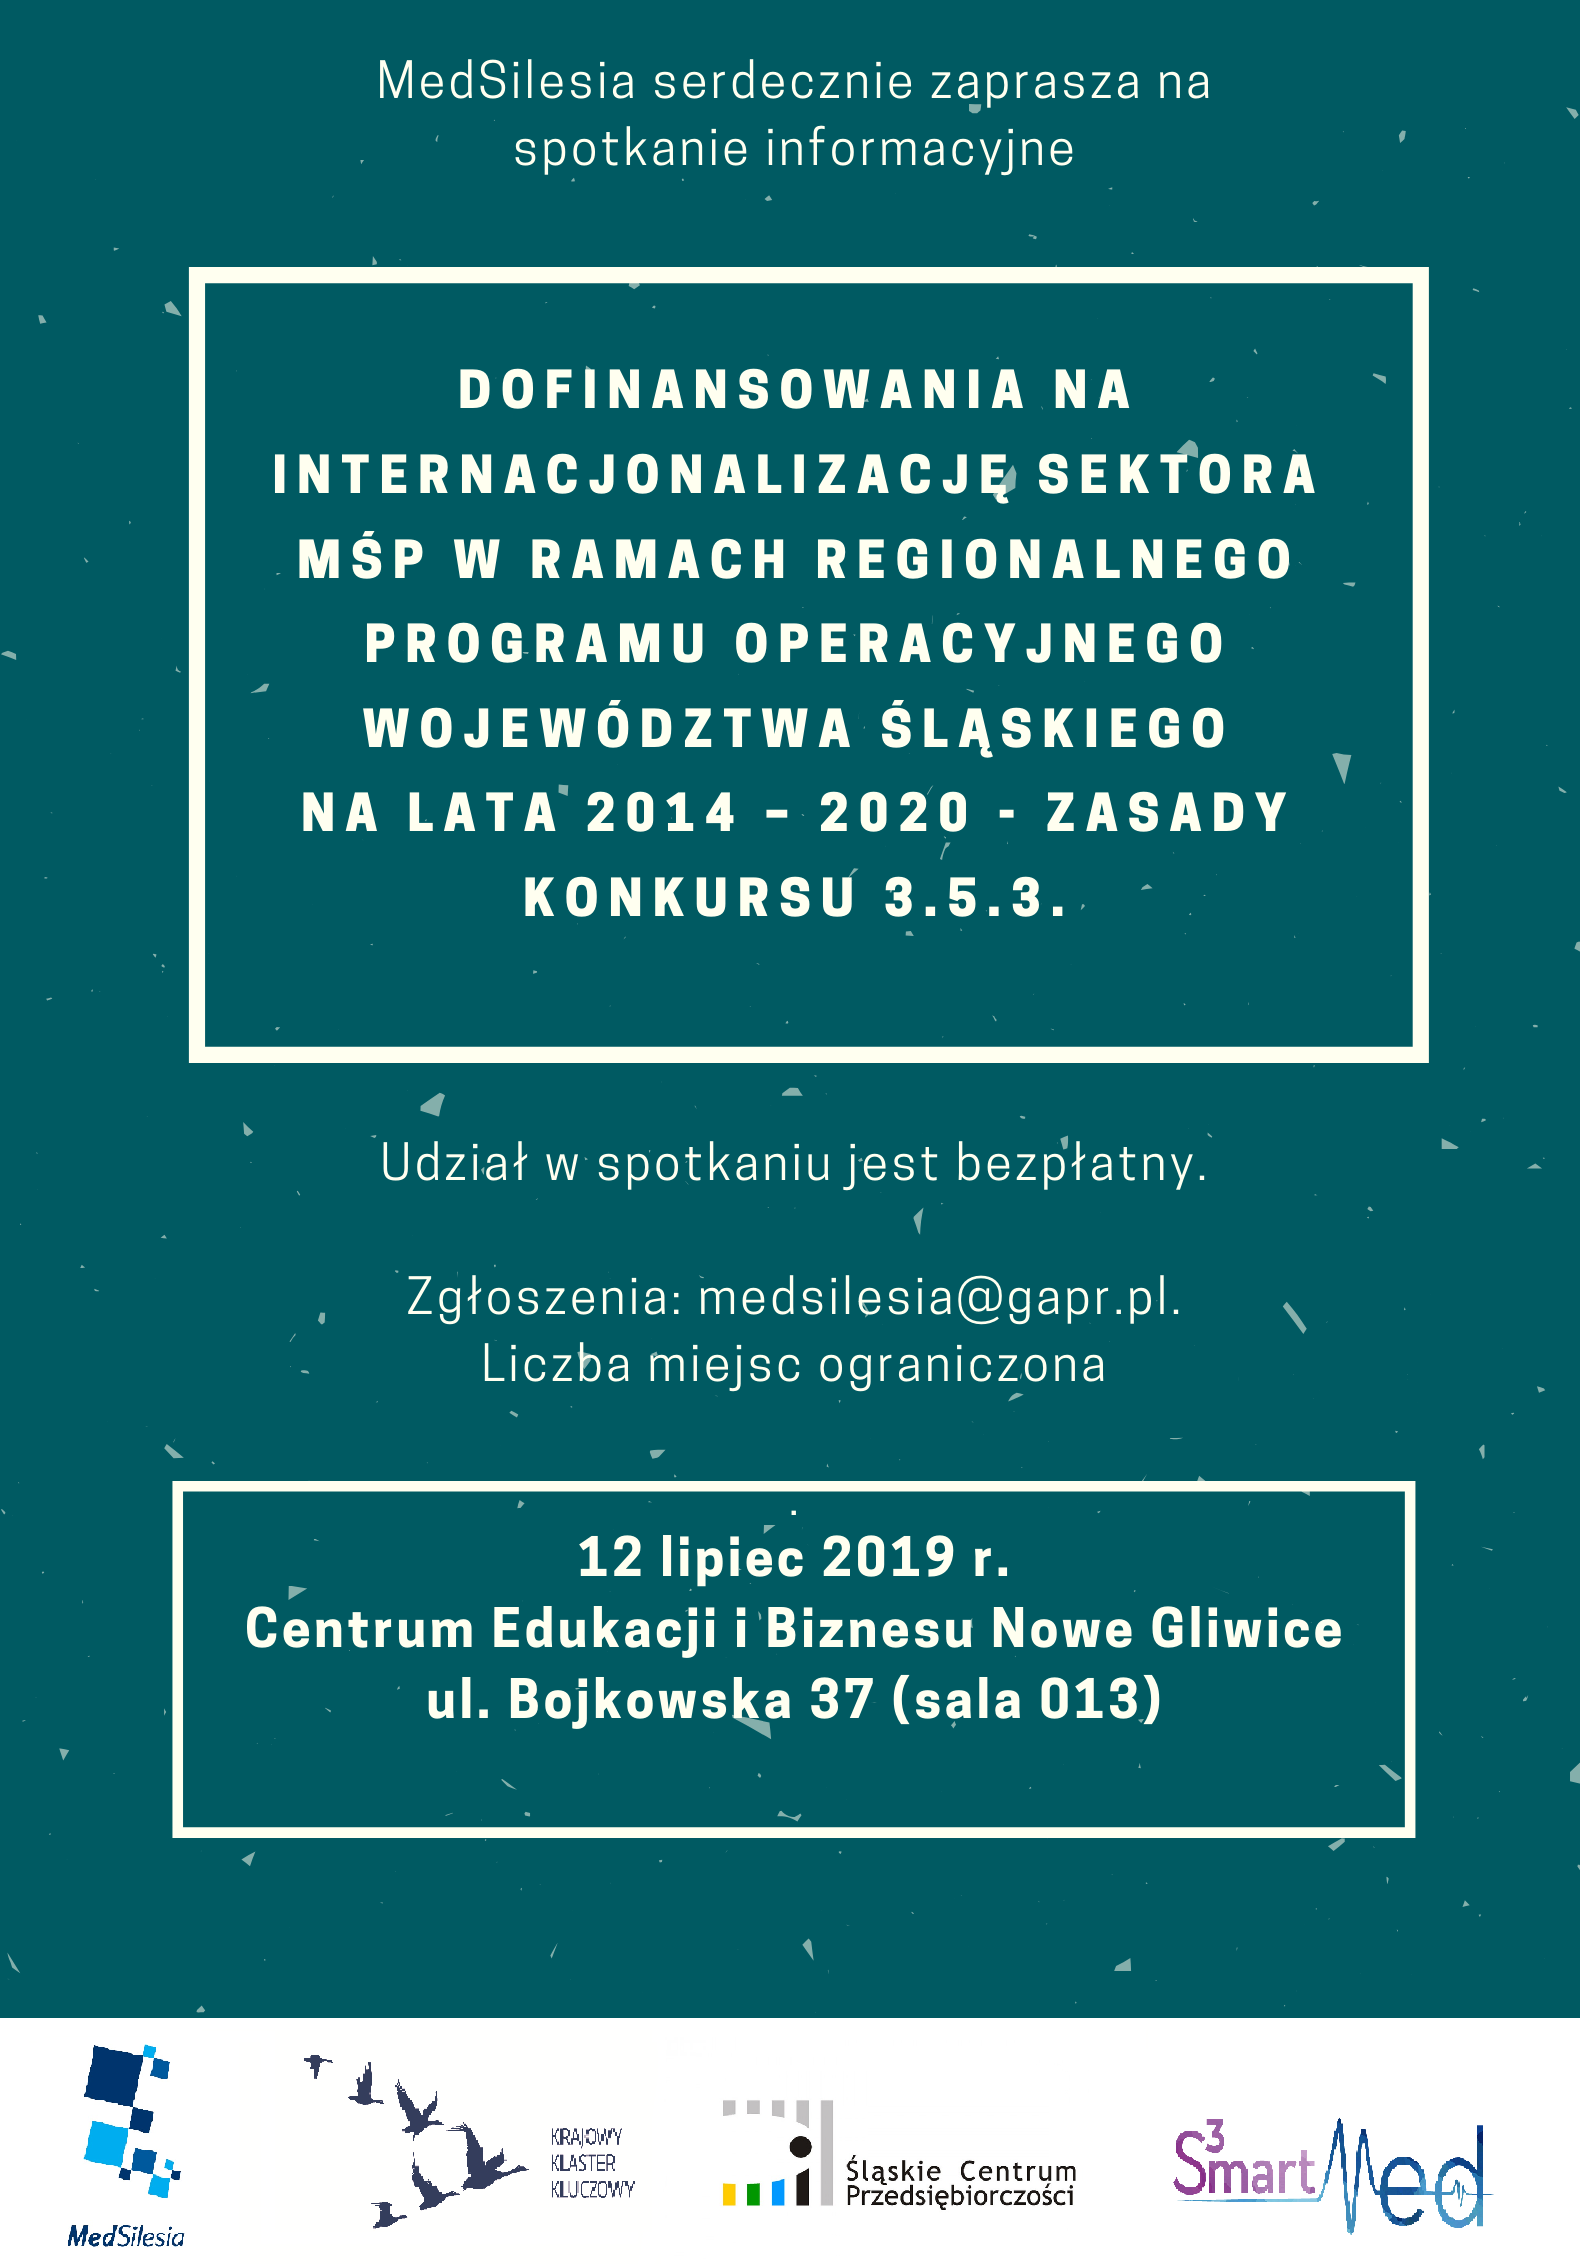 Dofinansowania na internacjonalizację sektora MŚP w ramach Regionalnego Programu operacyjnego Województwa Śląskiego na lata 2014 - 2020 - zasady konkursu 3.5.3.